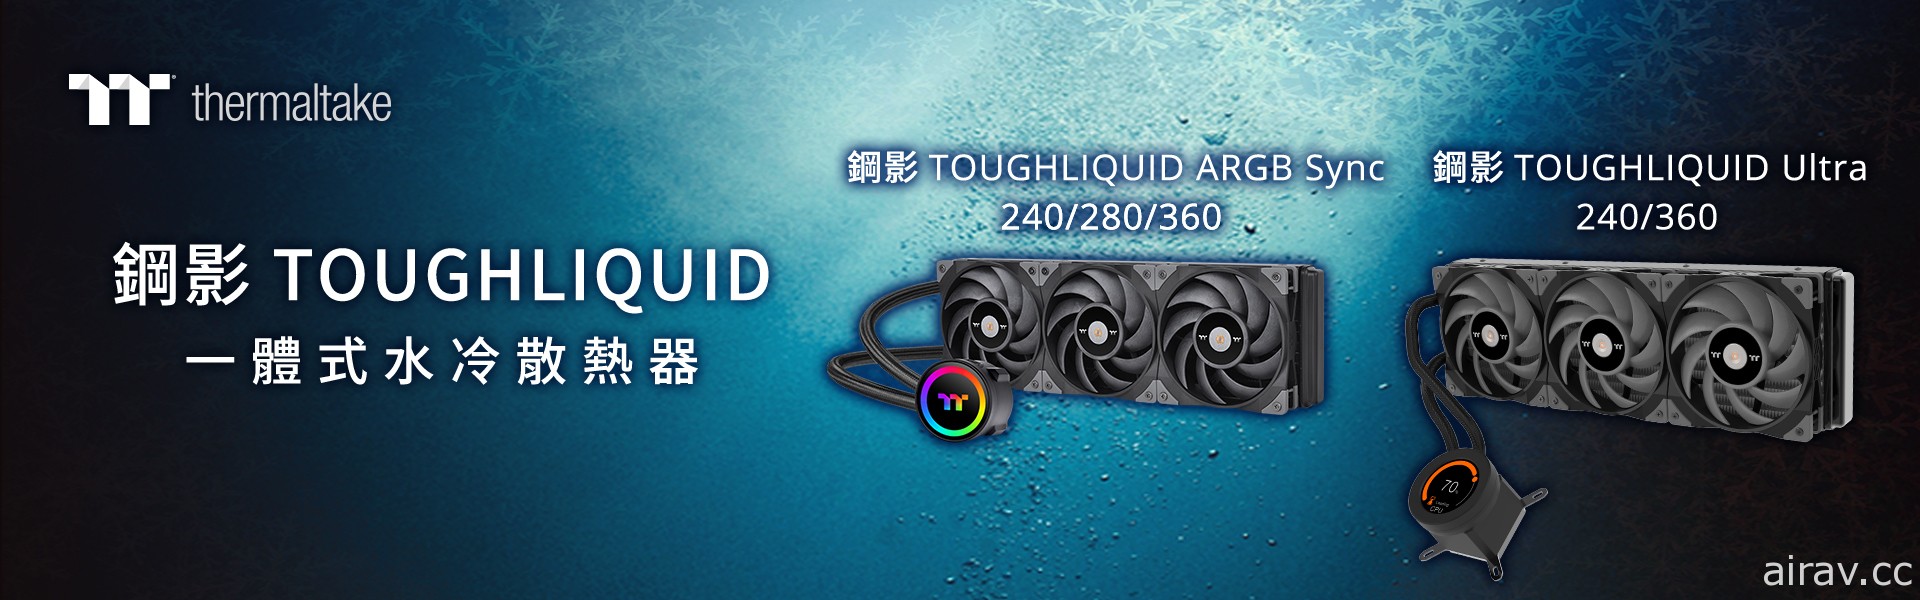 2021 曜越线上电脑展推出钢影 TOUGHLIQUID 系列一体式水冷散热器